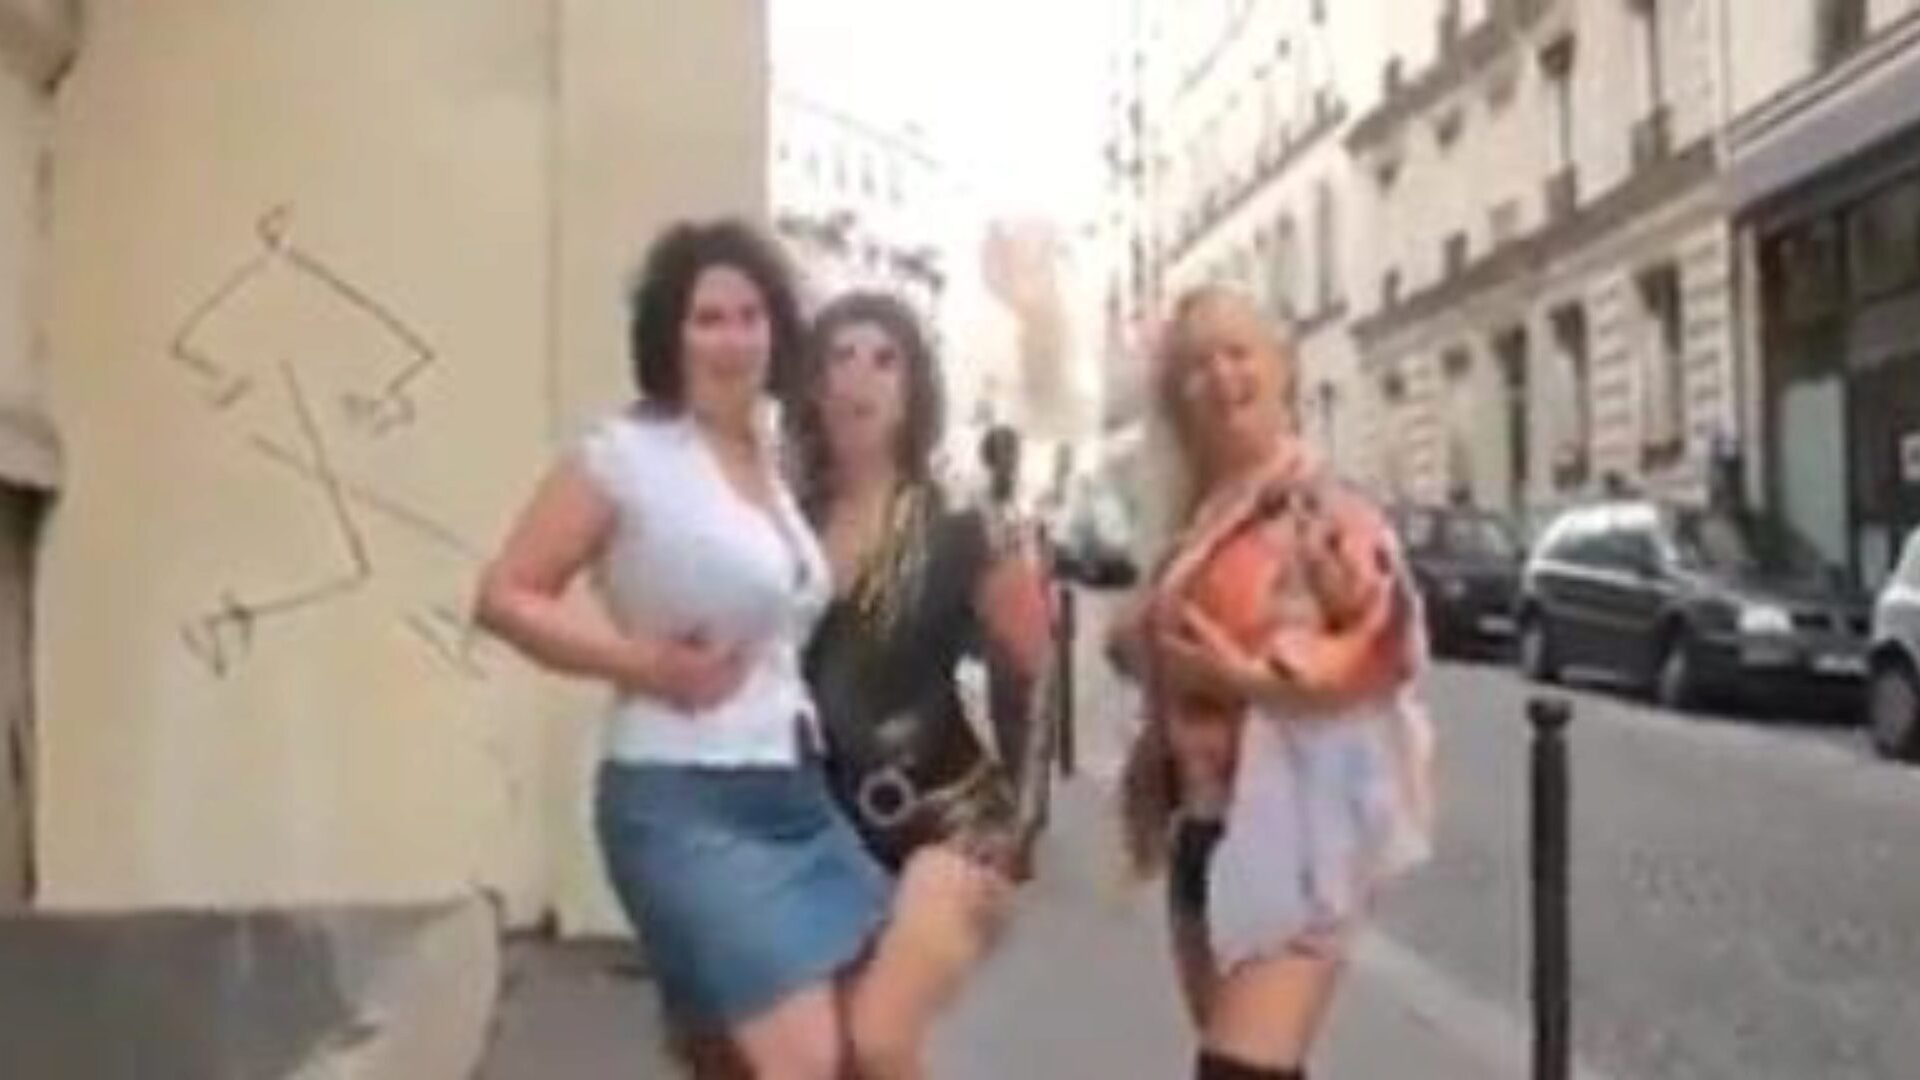 trio moden: gratis moden dvd porno video f5 - xhamster se trio moden tube sexklip til gratis-for-alle på xhamster, med den sexigste samling af franske modne dvd, anal & mobil modne pornografiske klipscener